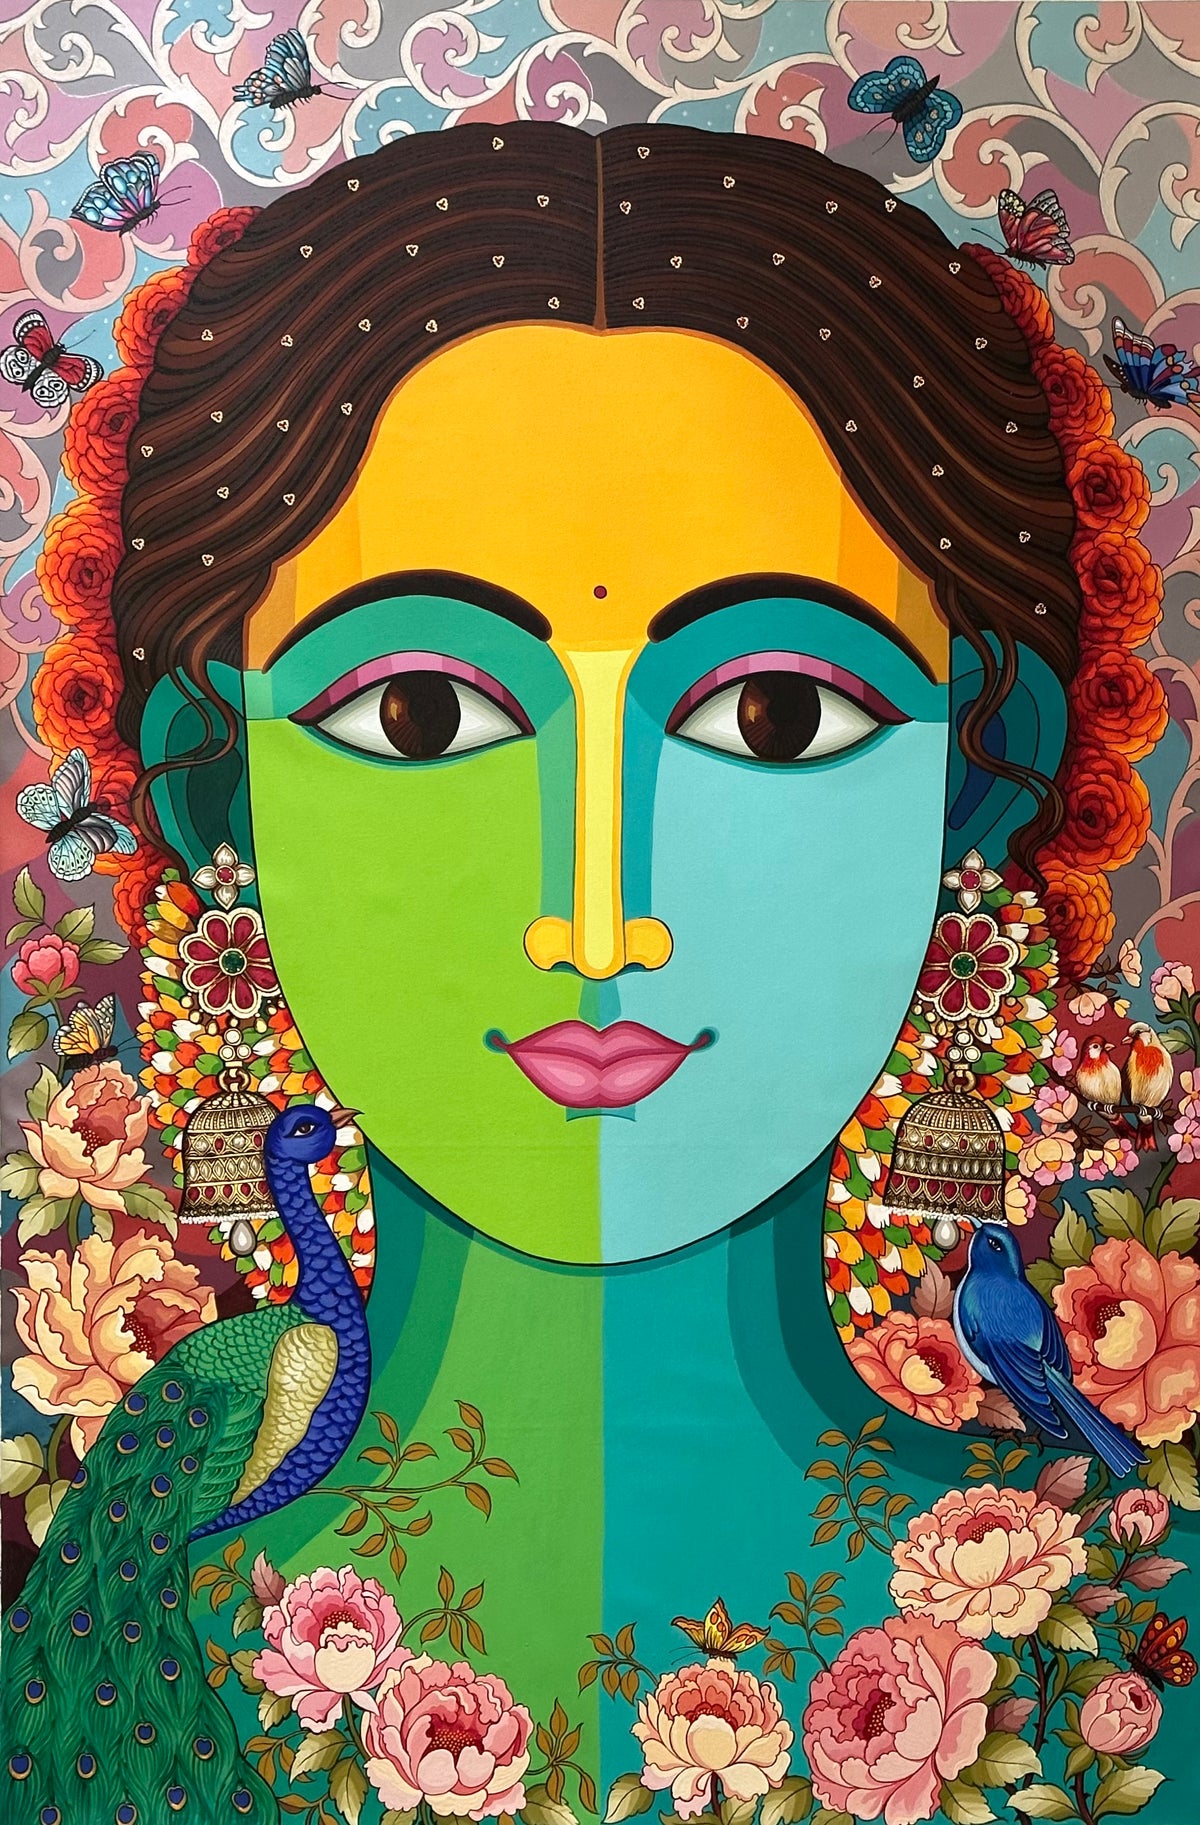 Udaya Lakshmi Chiluveru Paints a captivating woman’s portrait in acrylics on canvas